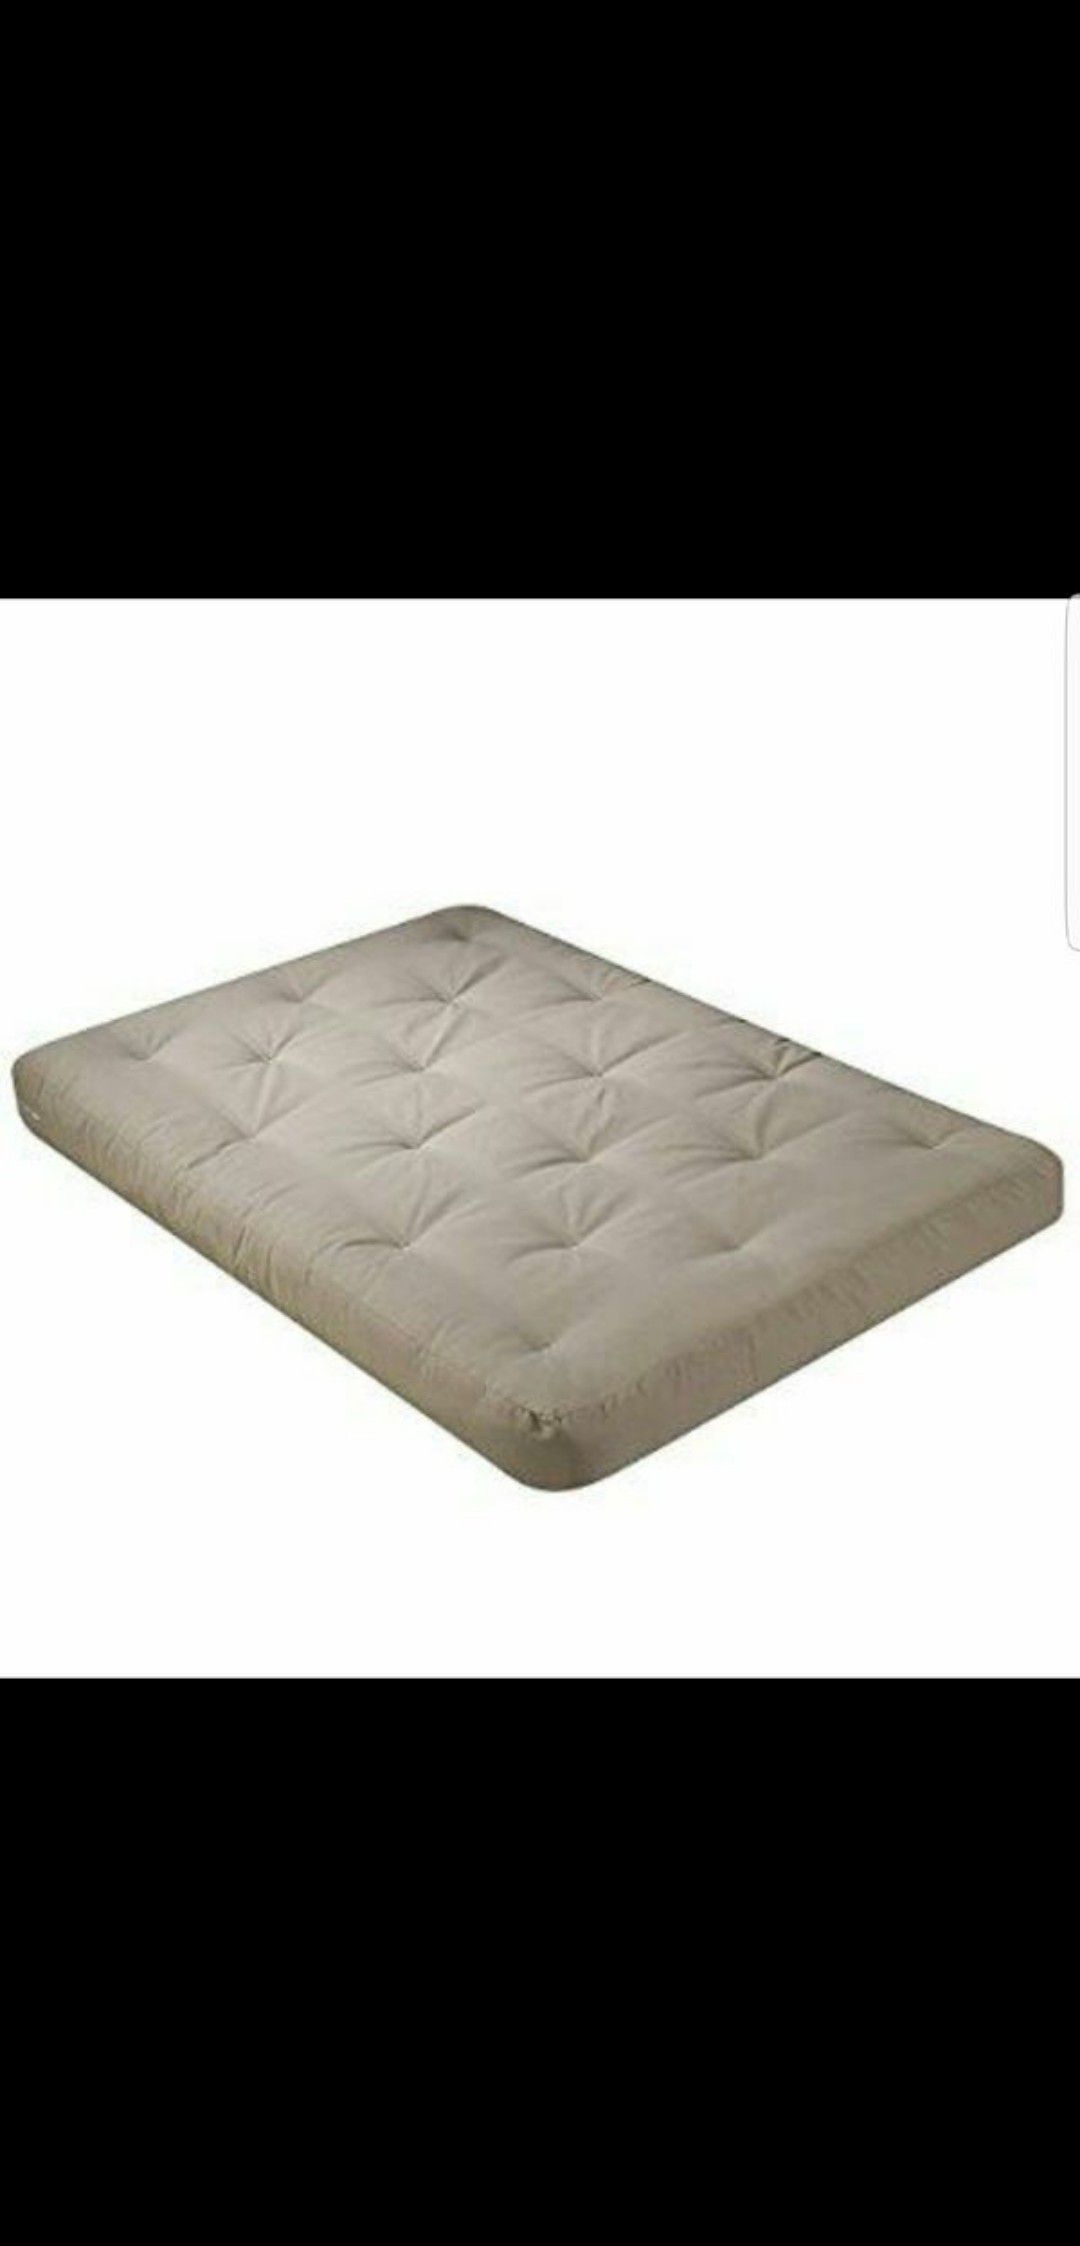 8 inch Queen Serta futon mattress